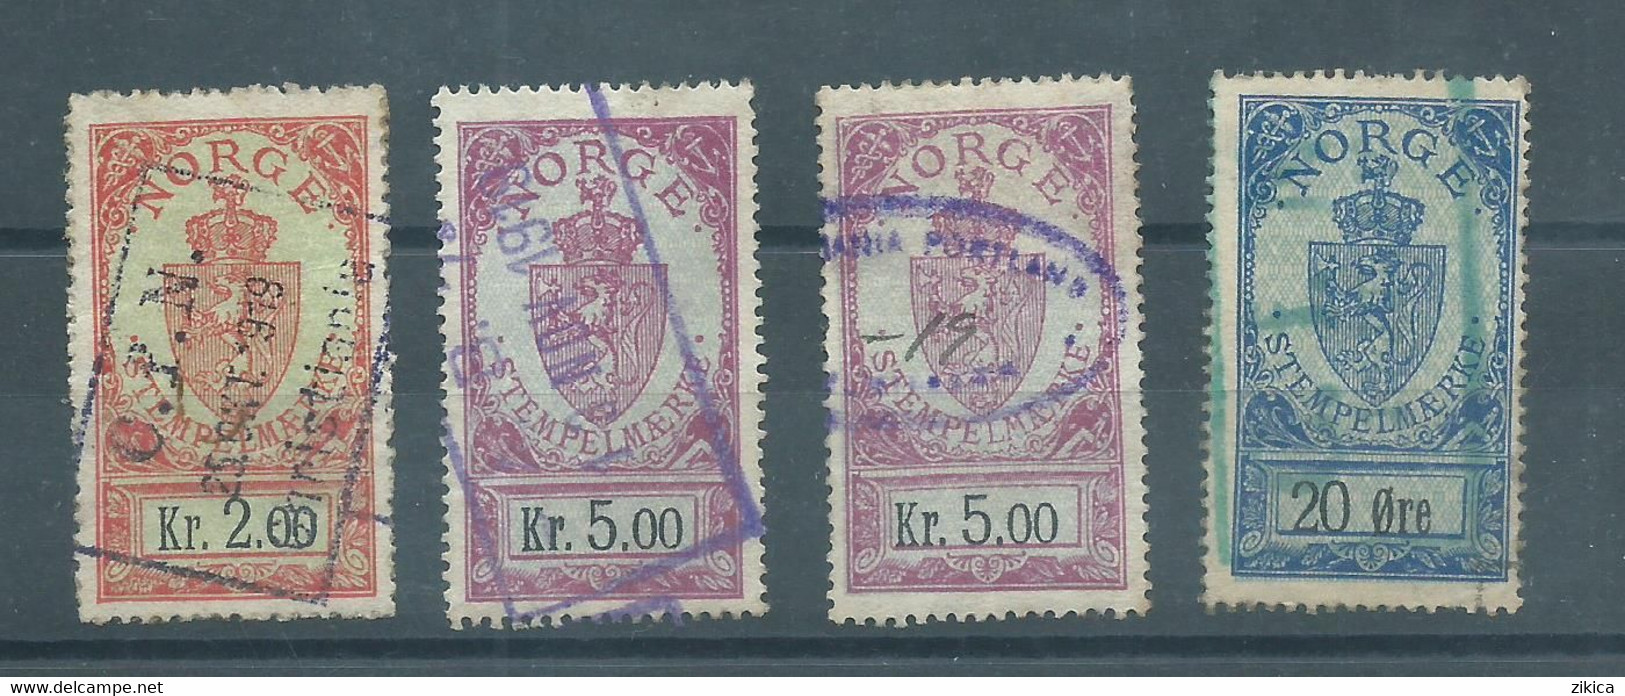 LOT 4 Stamps - NORWAY Norwegen Stempelmarke Documentary Stamps - Steuermarken